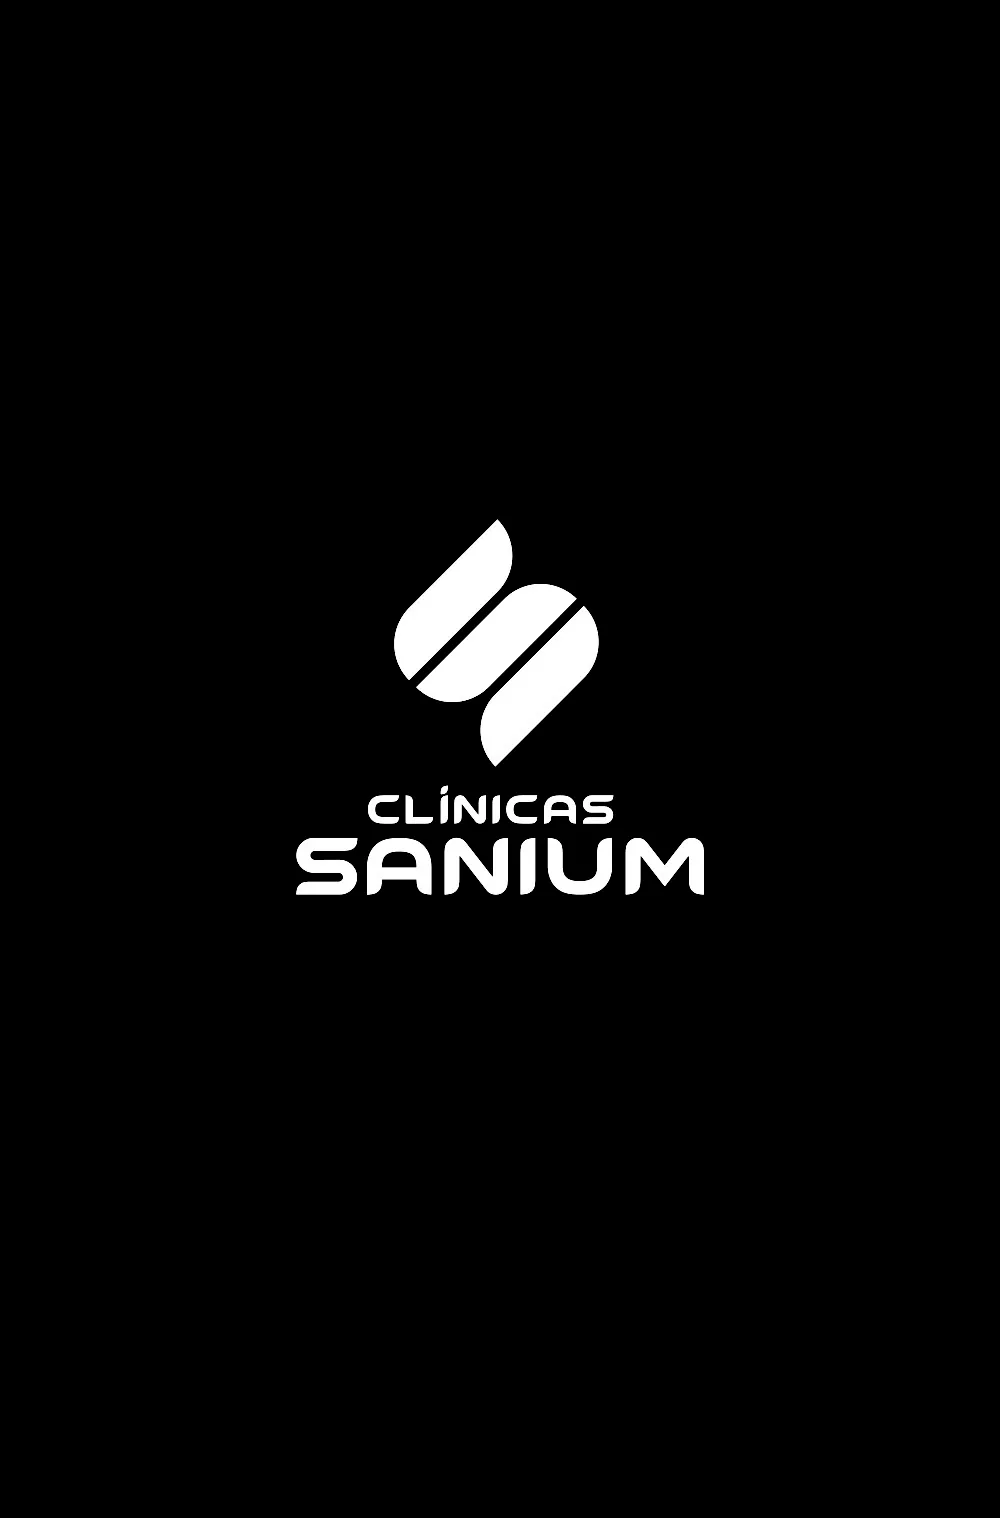 Logo Clínicas Sanium blanco con fondo negro